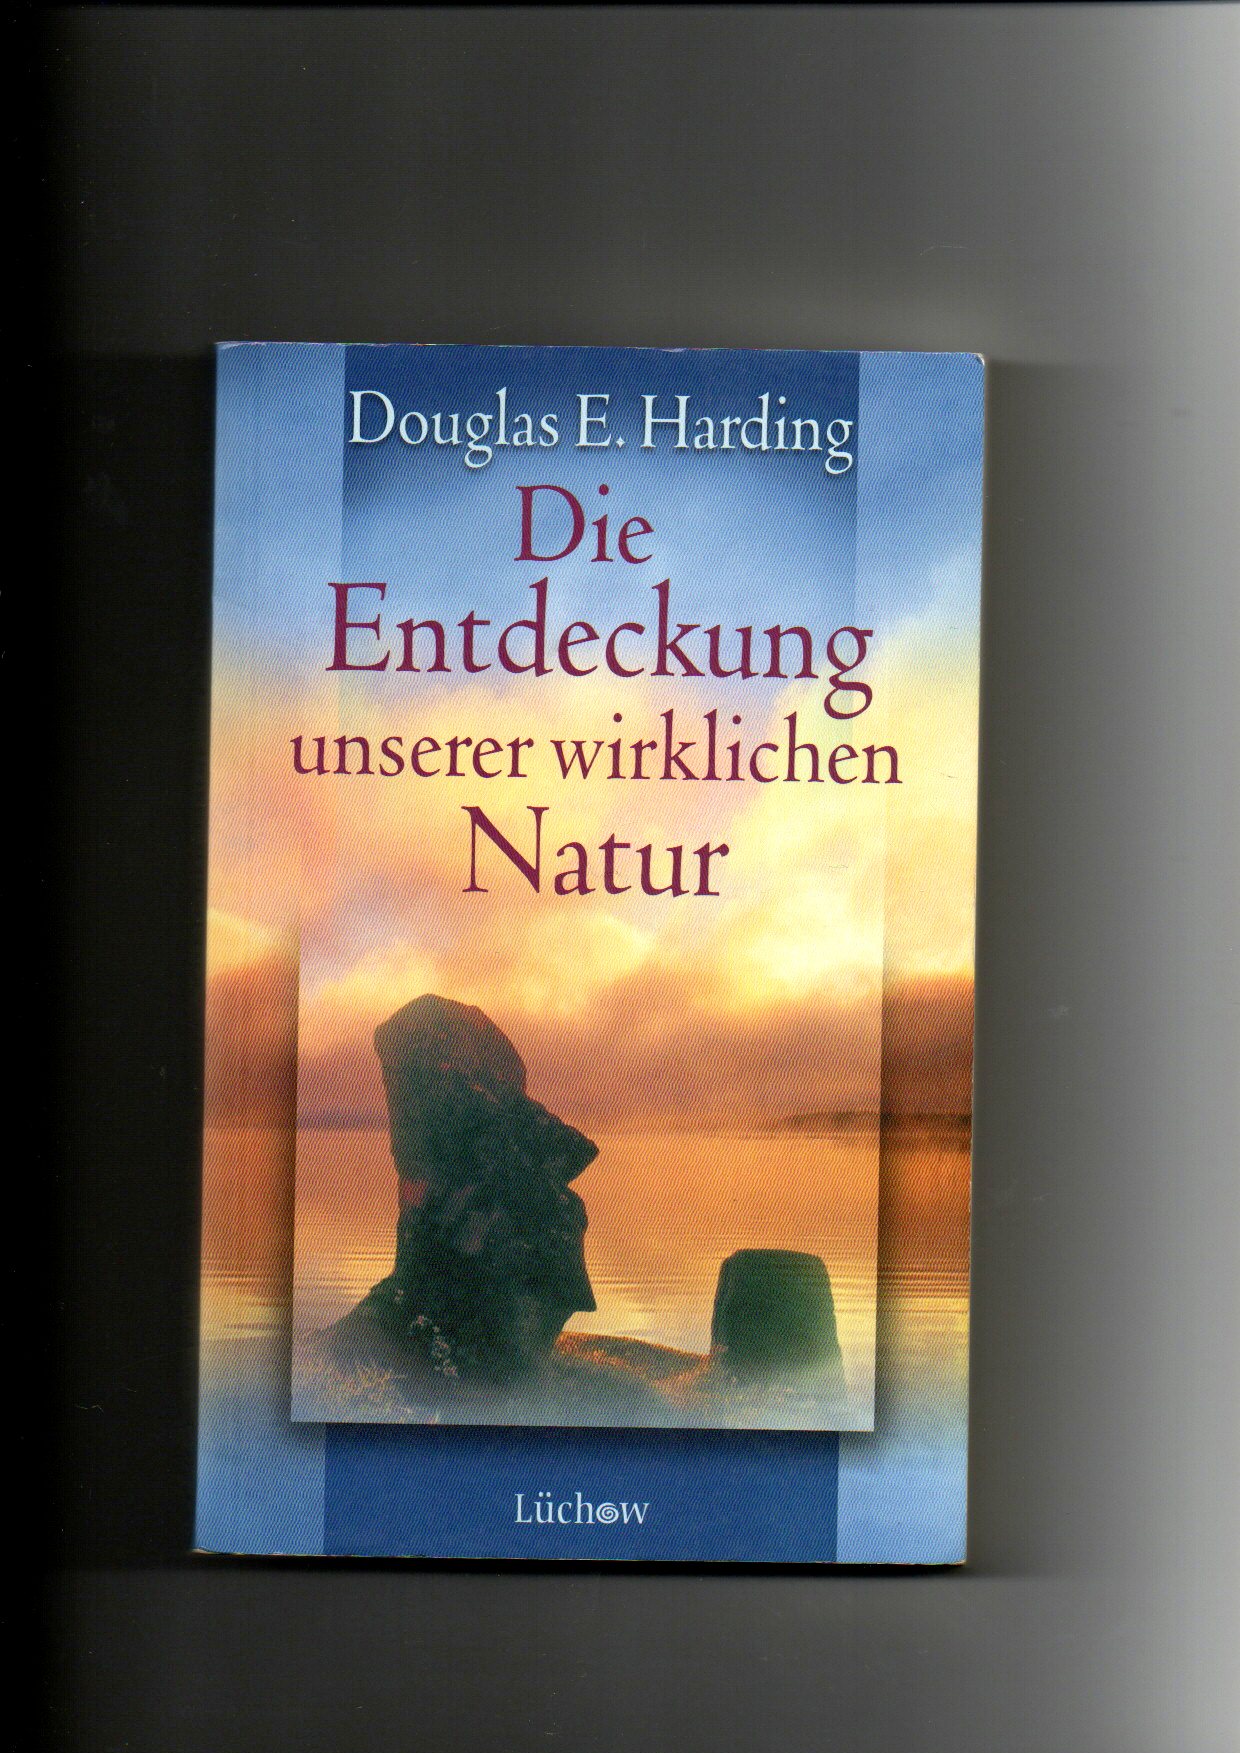 Douglas E. Harding, Die Entdeckung unserer wirklichen Natur - Harding, Douglas